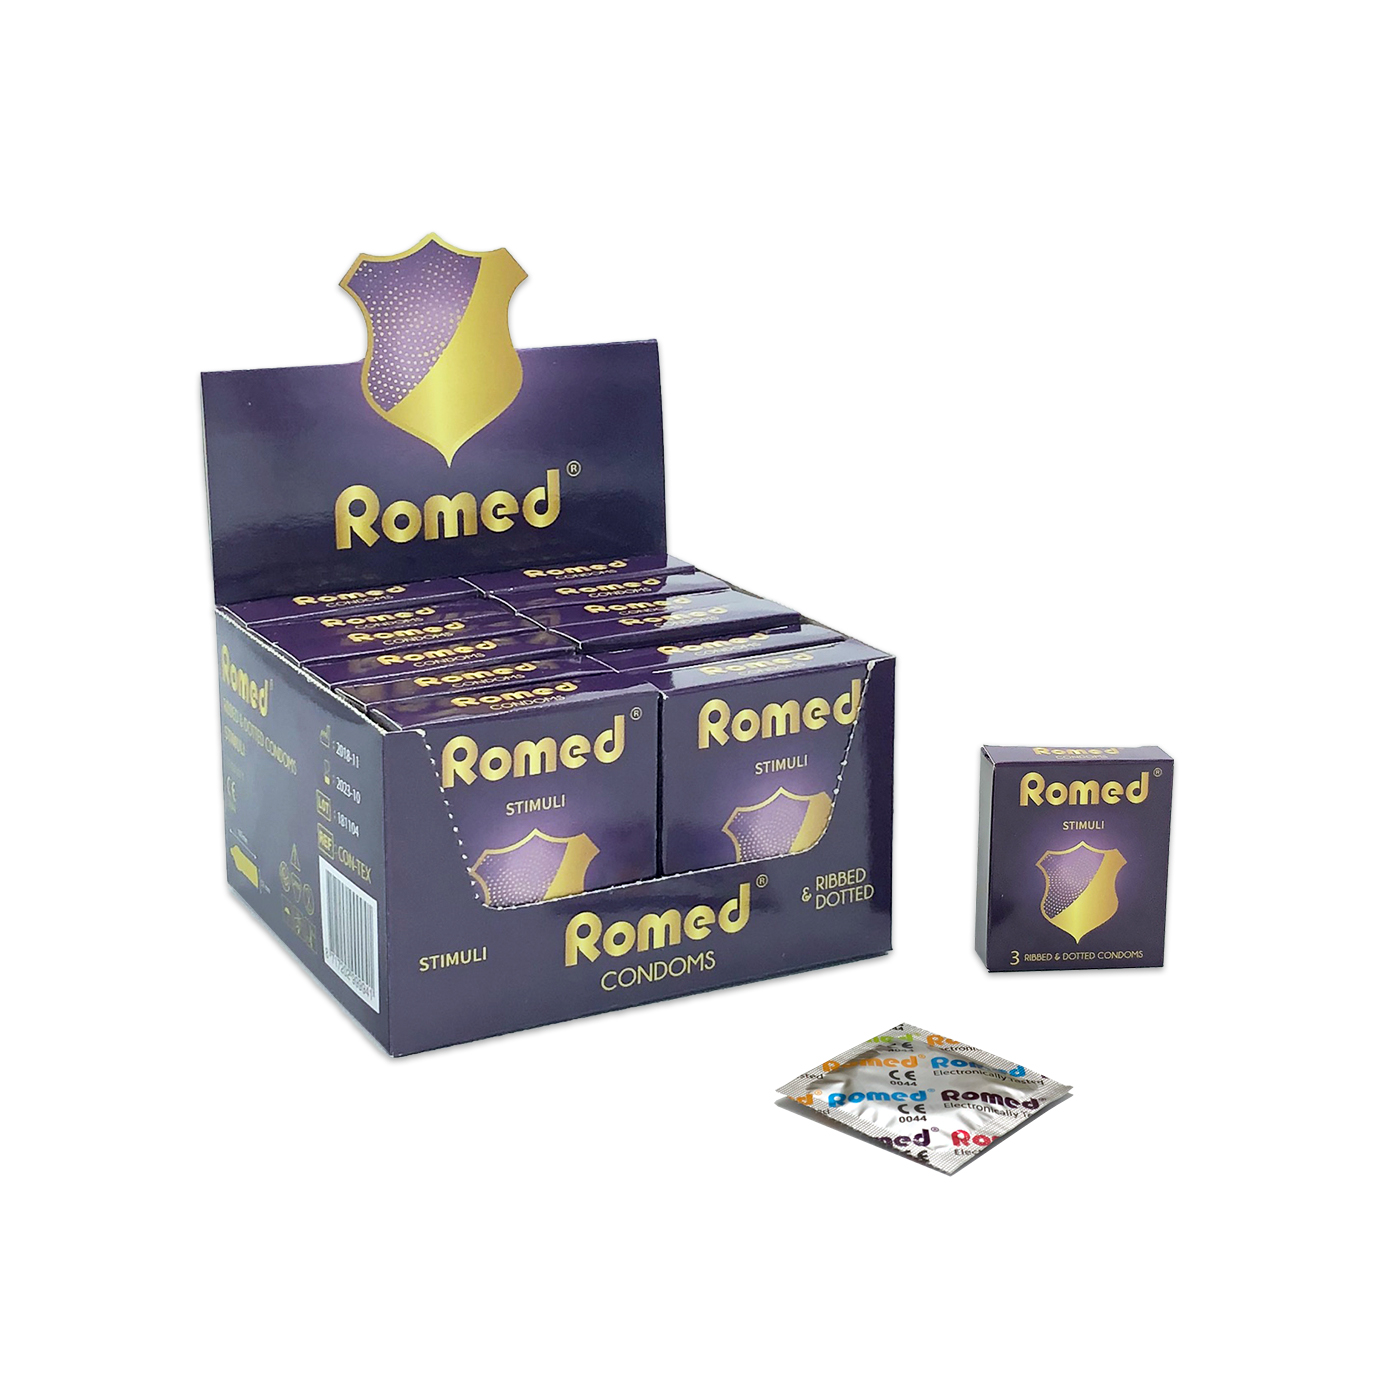 CON-TEX Romed Kondome geriffelt, Streifen zu 3 Stück in einem Päckchen, in Cellophan, 48 Päckchen = 144 Stück in einer Schachtel (= 1 Gros), 30 x 144 Stück = 4.320 Stück im Karton.